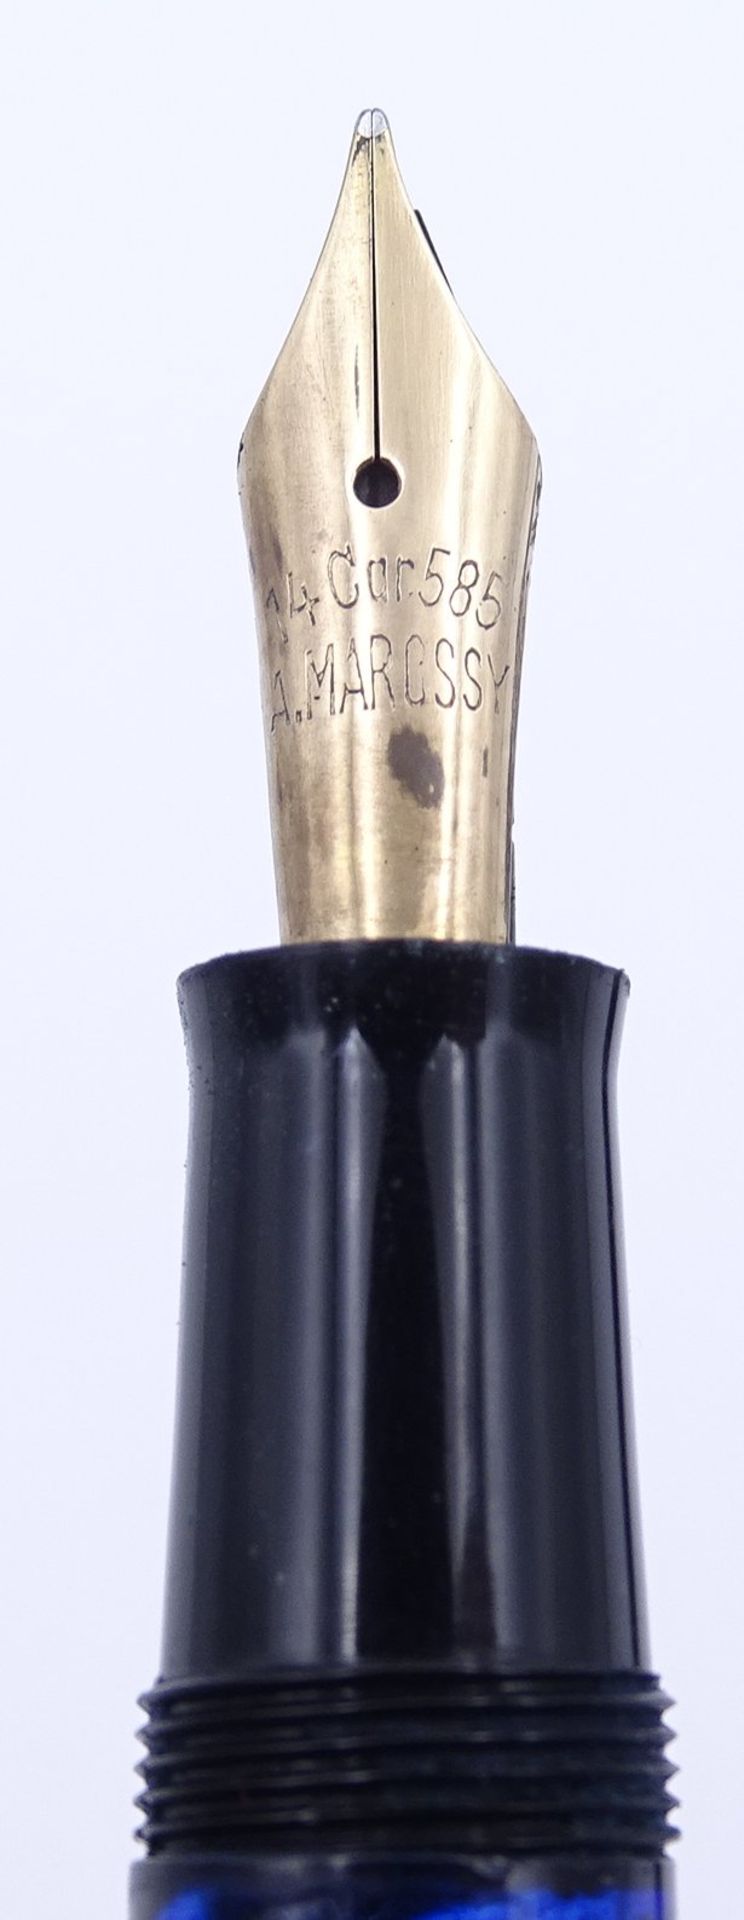 Marossy Füller, GG Feder 0.585, L. 12,5cm, Alters- und Gebrauchsspuren - Image 2 of 5